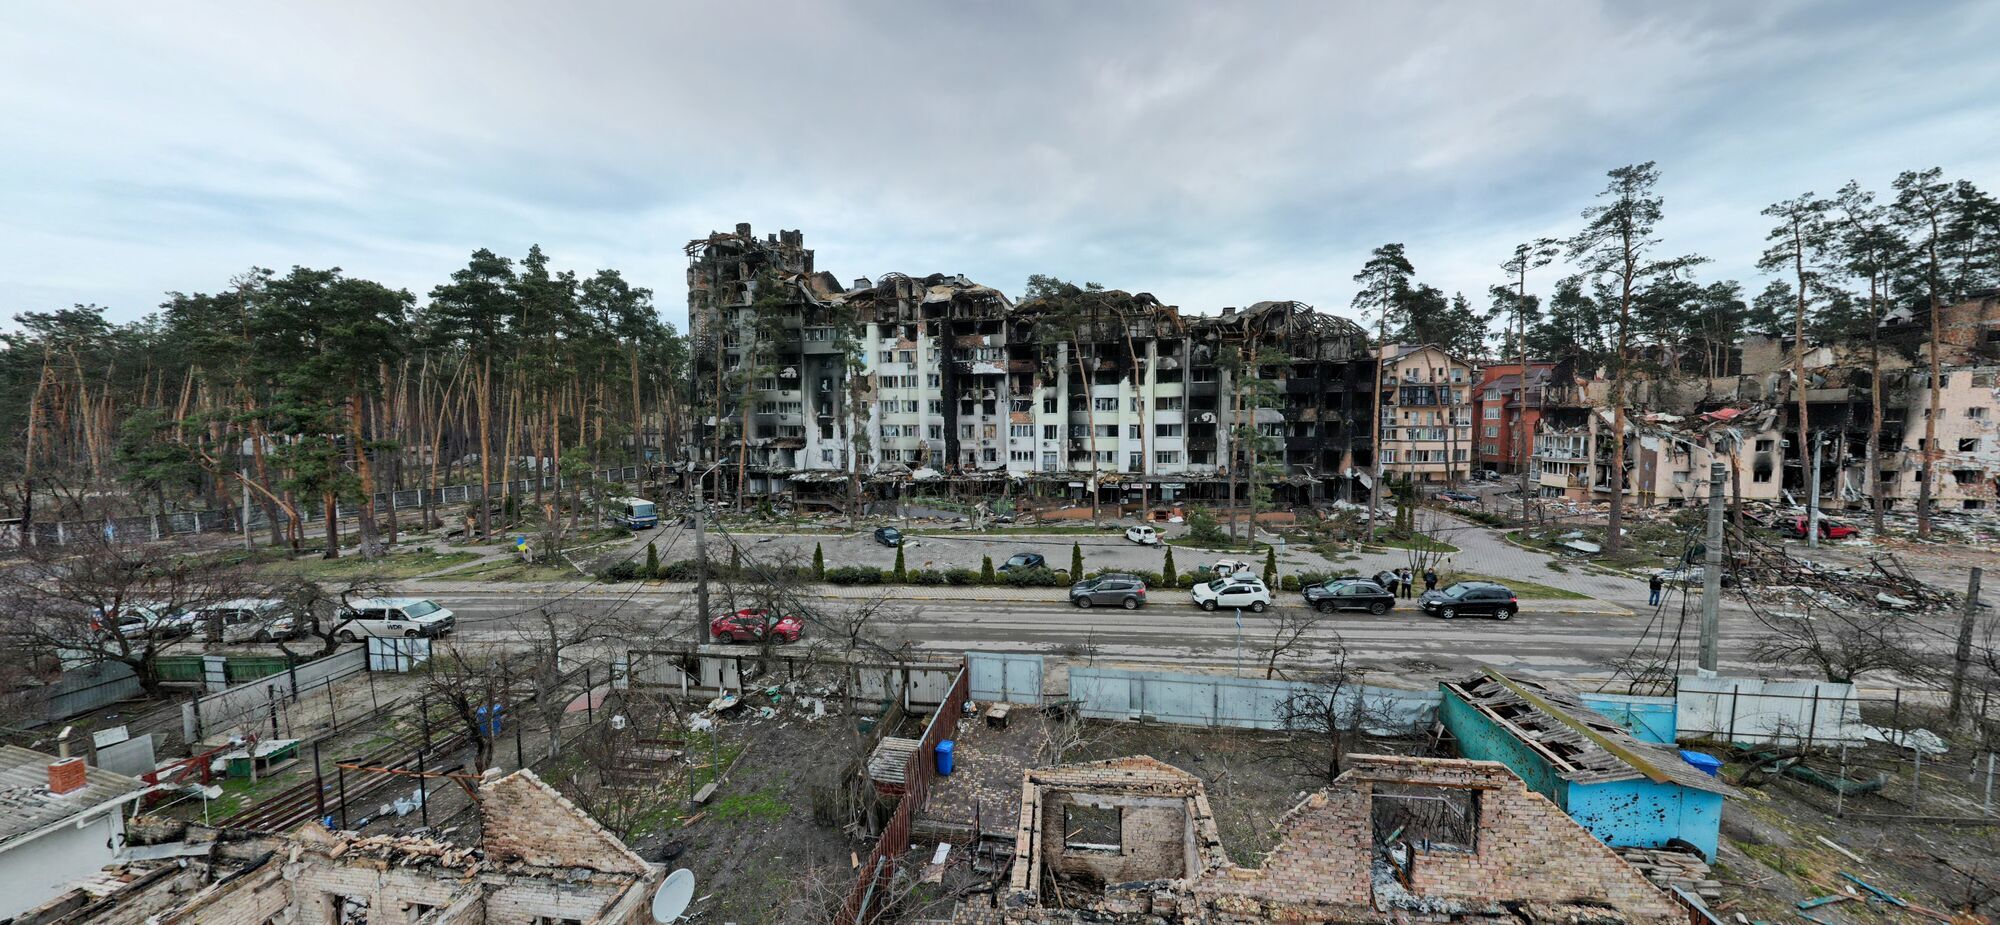 Більшість будівель в Ірпені було пошкоджено.